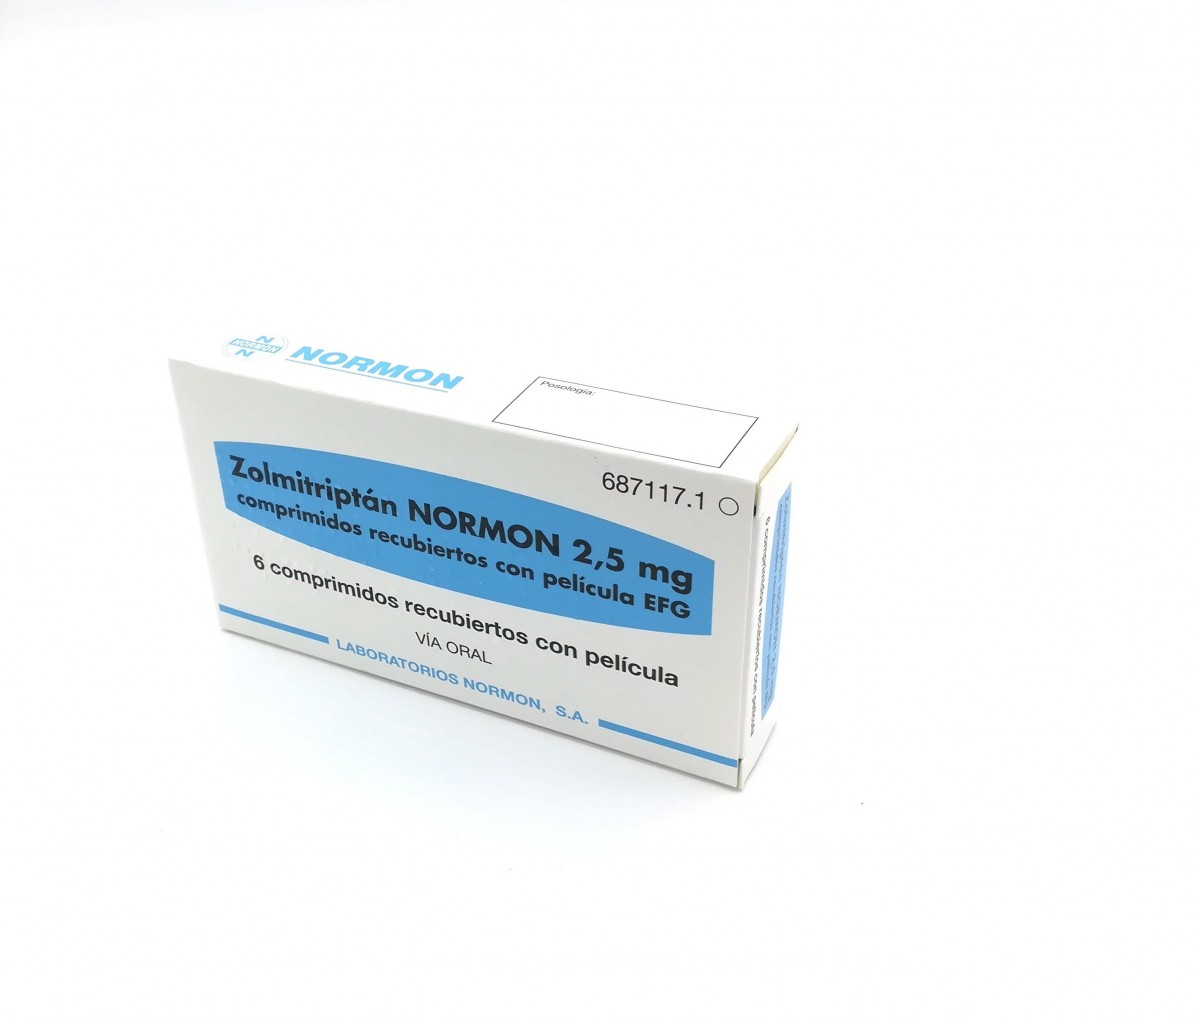 ZOLMITRIPTAN NORMON 2,5 mg COMPRIMIDOS RECUBIERTOS CON PELICULA EFG , 6 comprimidos fotografía del envase.